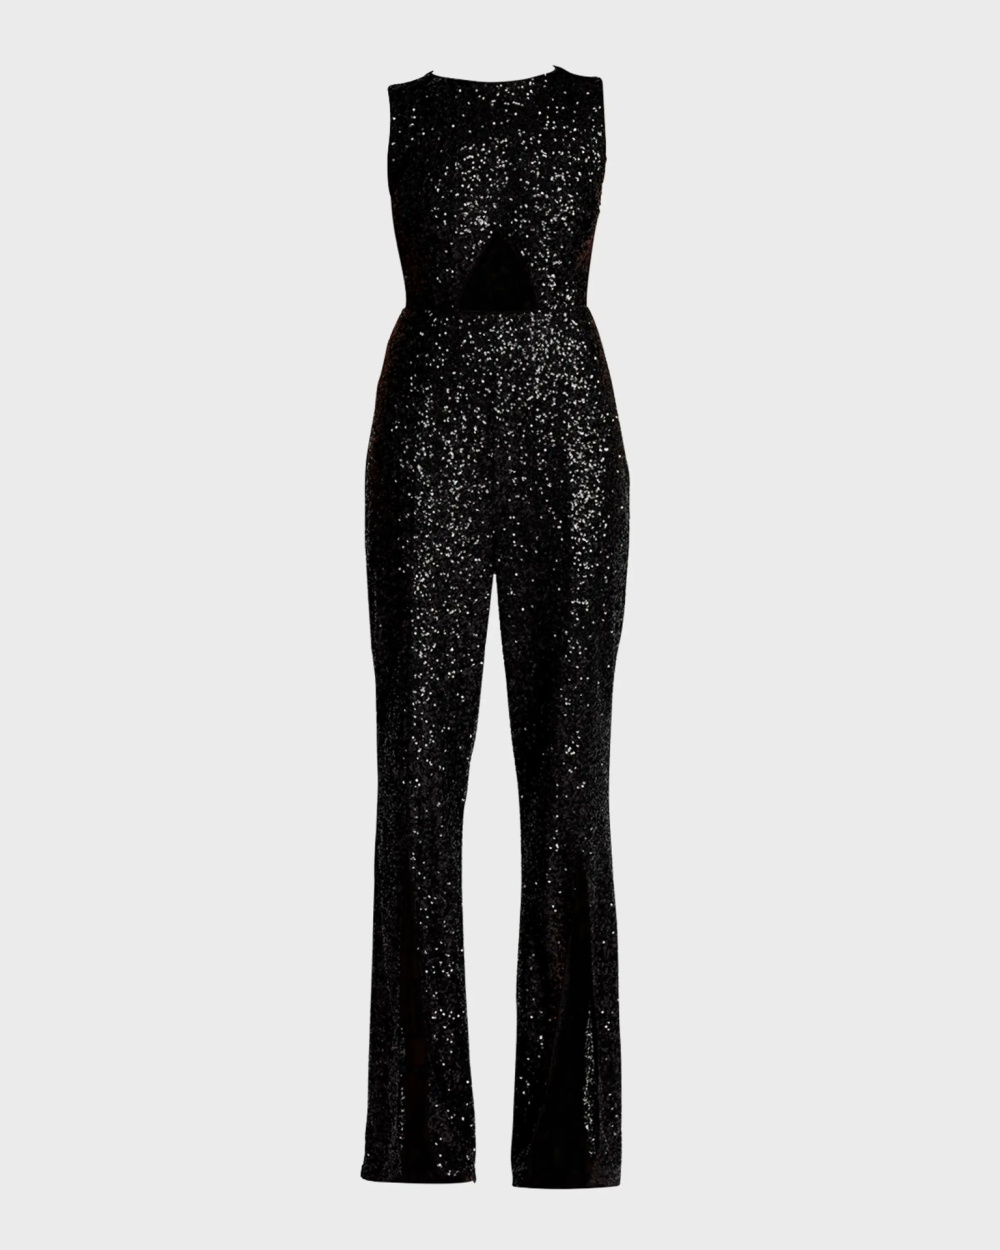 Sleeveless sexy black European style sequins autumn jumpsuit